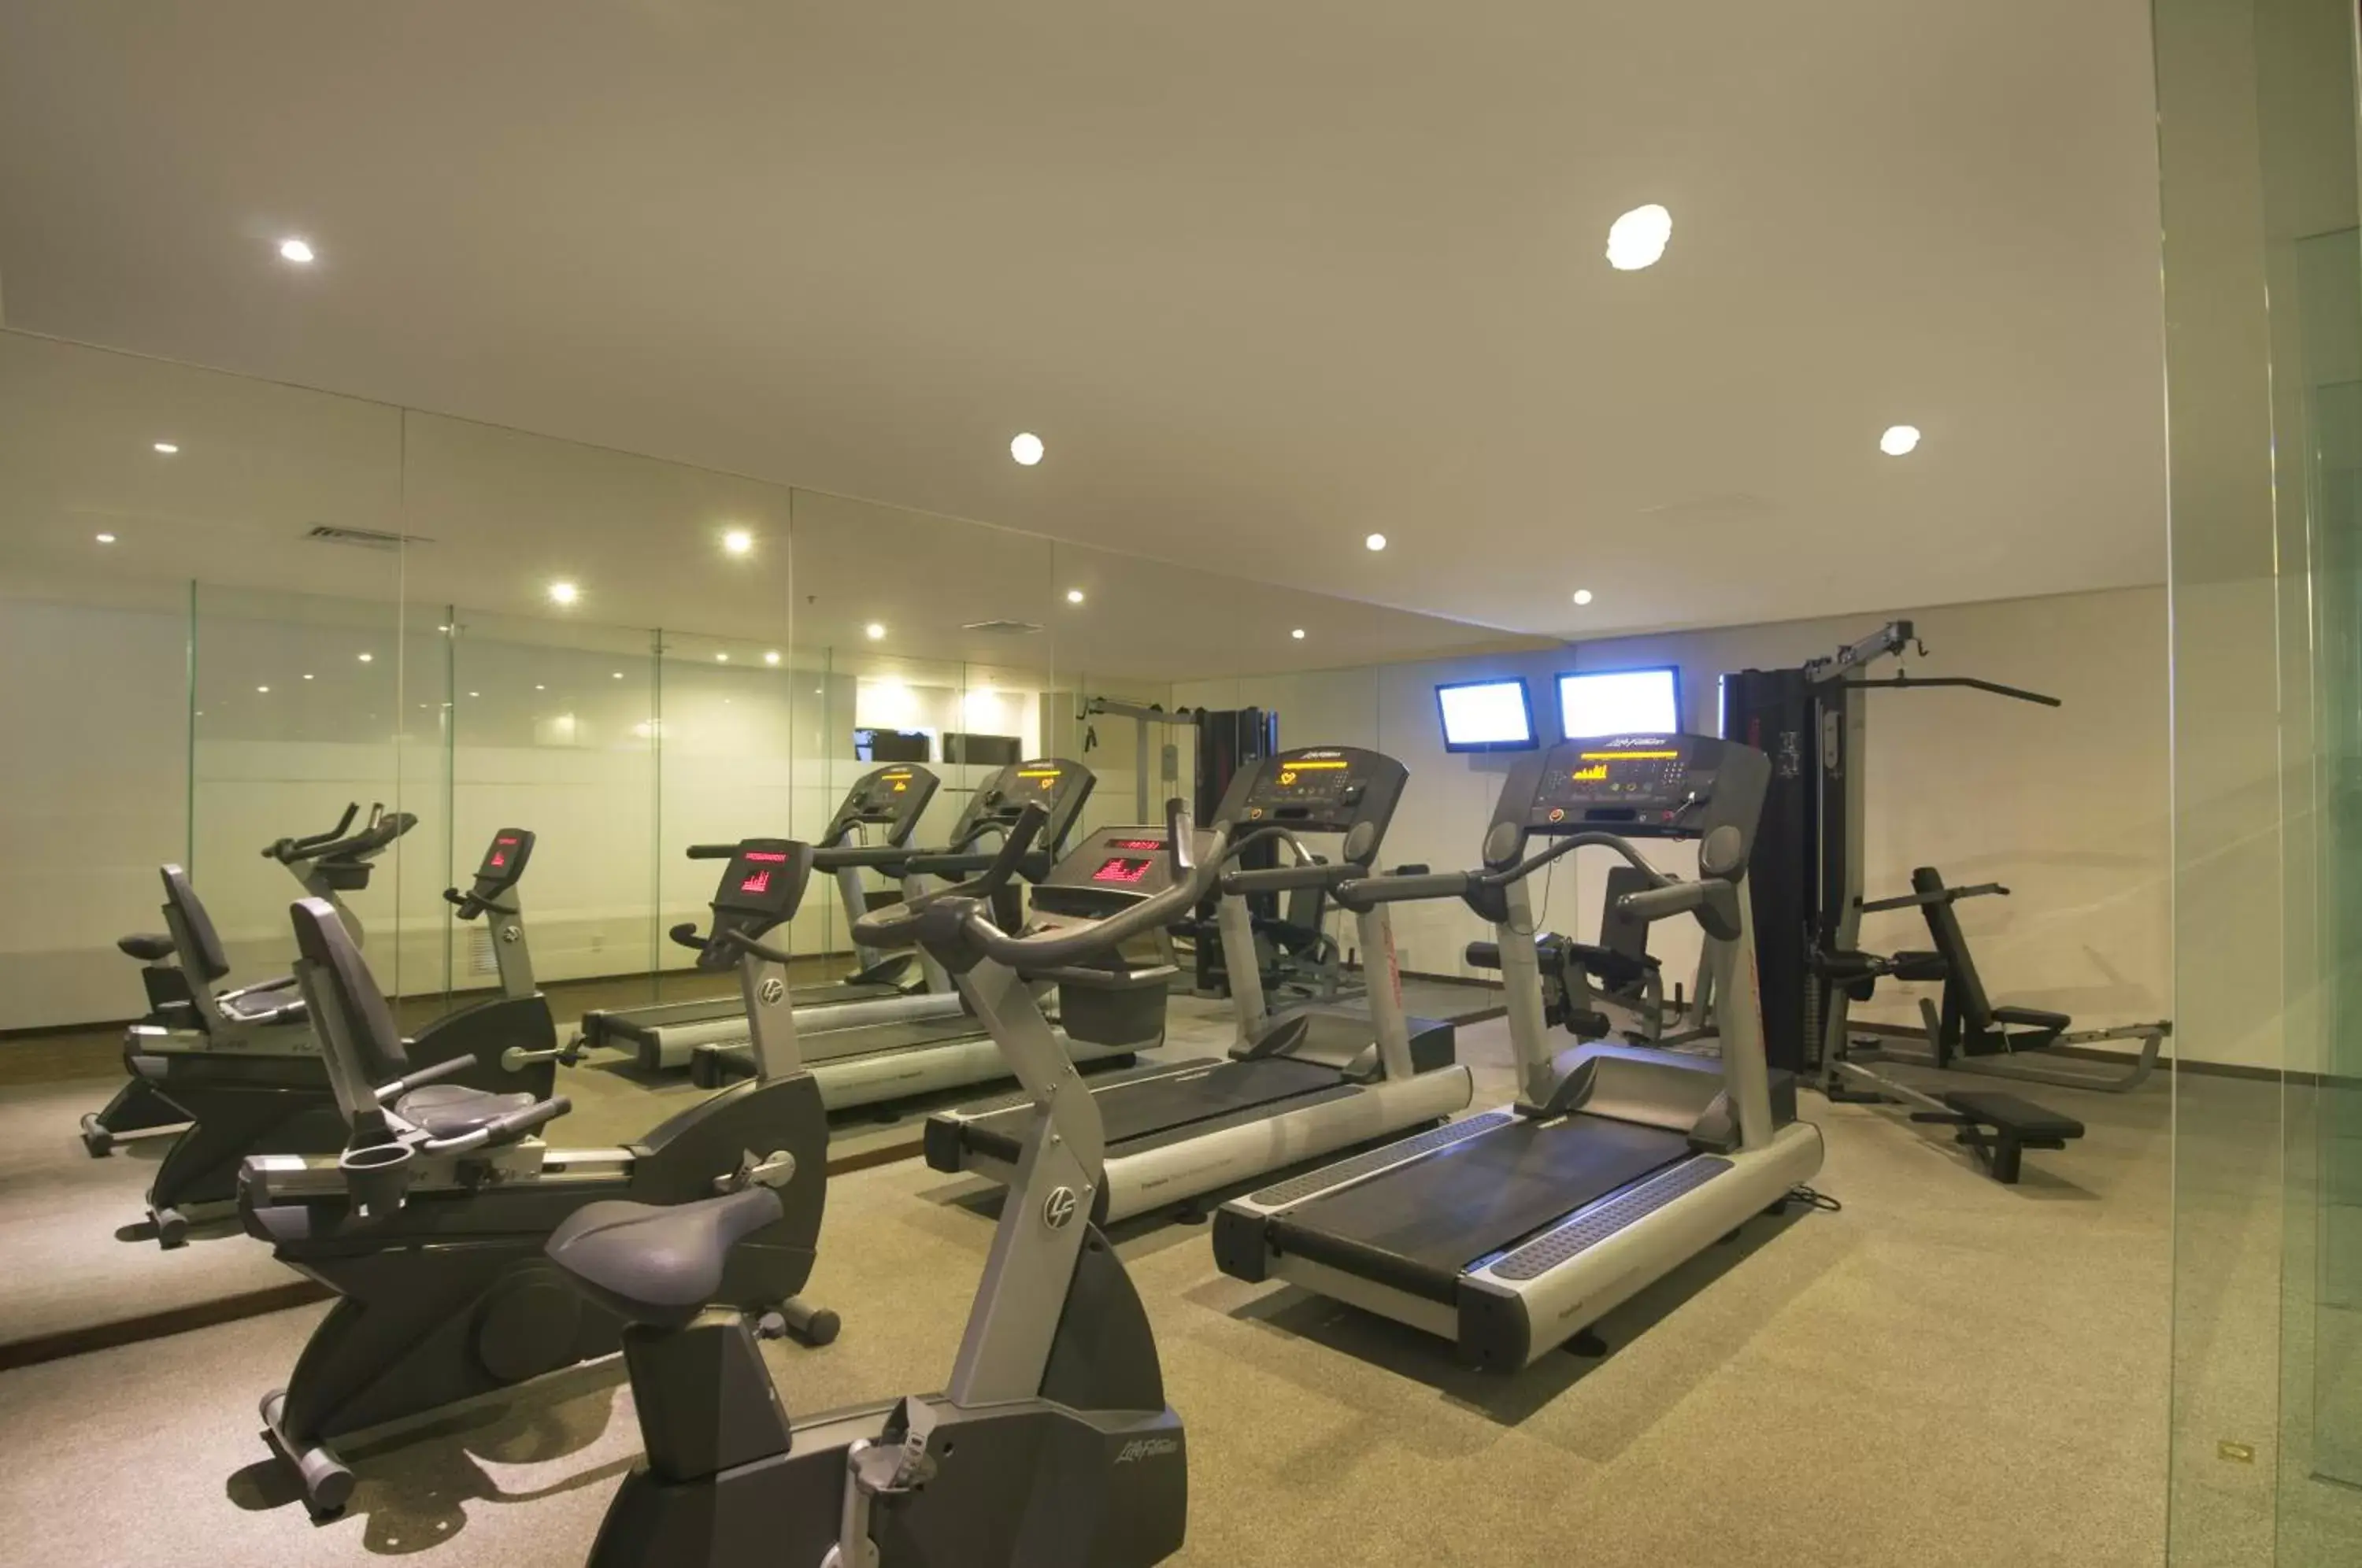 Fitness centre/facilities, Fitness Center/Facilities in Fiesta Inn Insurgentes Sur